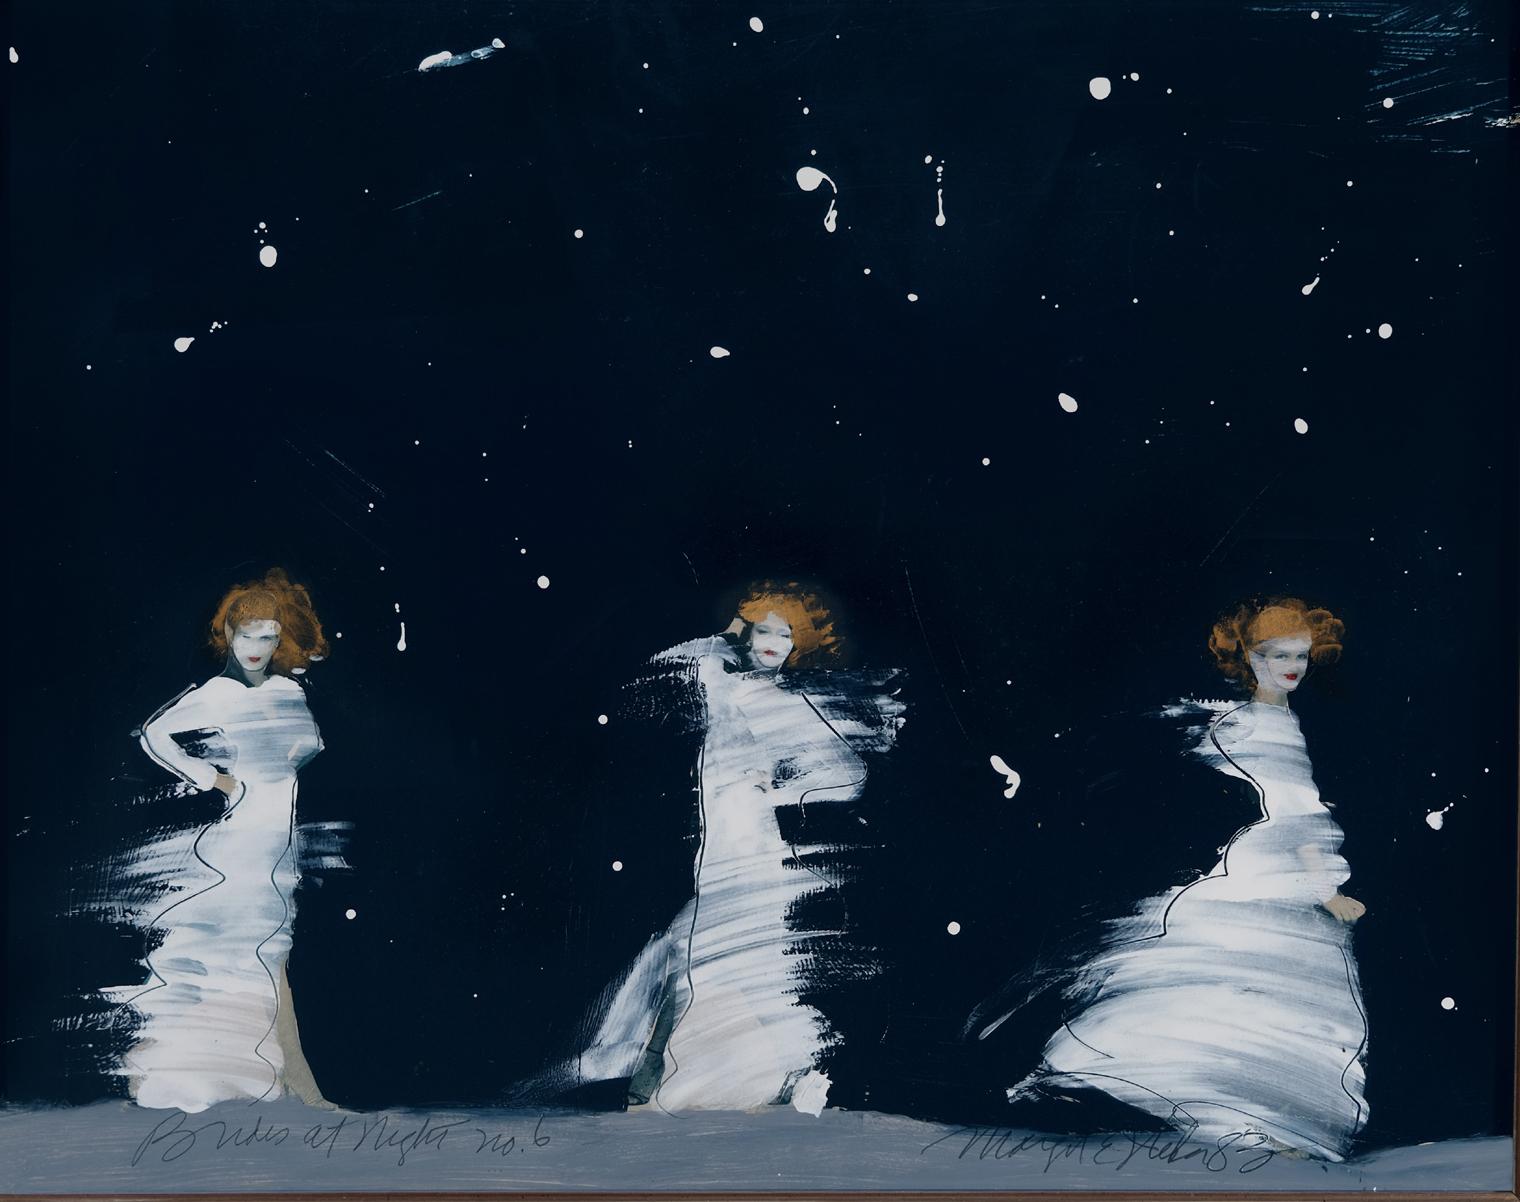 Brautpaare bei Nacht  Nr. 6, Collage, amerikanischer Künstler, Mixed Media, Tanzen, römisches Stil (Abstrakter Impressionismus), Mixed Media Art, von Margit Ilika